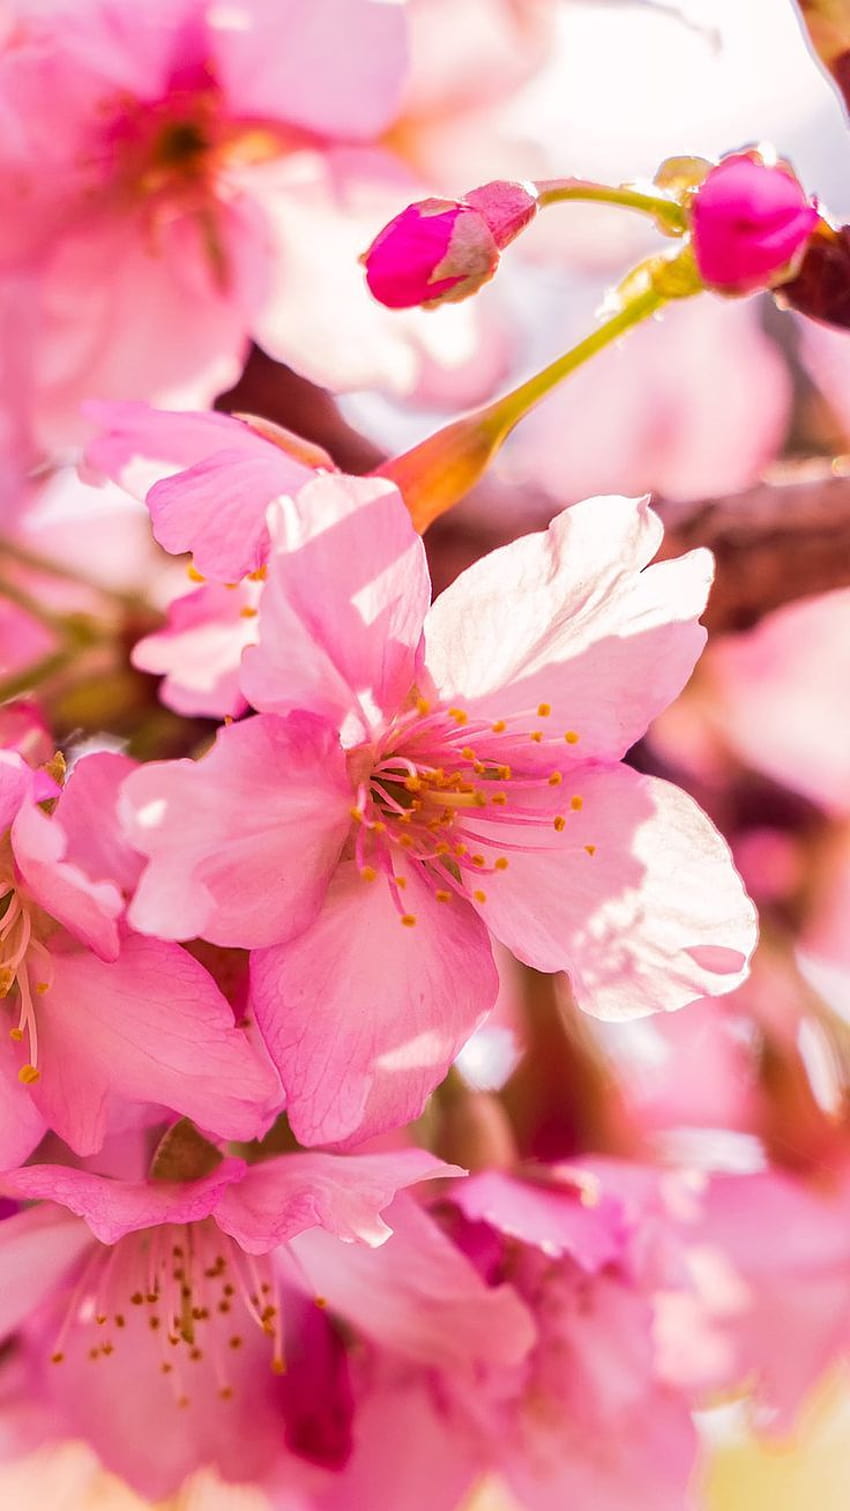 Đón mùa xuân với những hình nền đáng yêu cho màn hình nhà iphone của bạn. Với các hoa màu hồng nhạt và cảnh thiên nhiên tươi tắn, chắc chắn sẽ khiến cho bạn vui vẻ và cảm thấy thư giãn hơn. Hãy xem ngay!